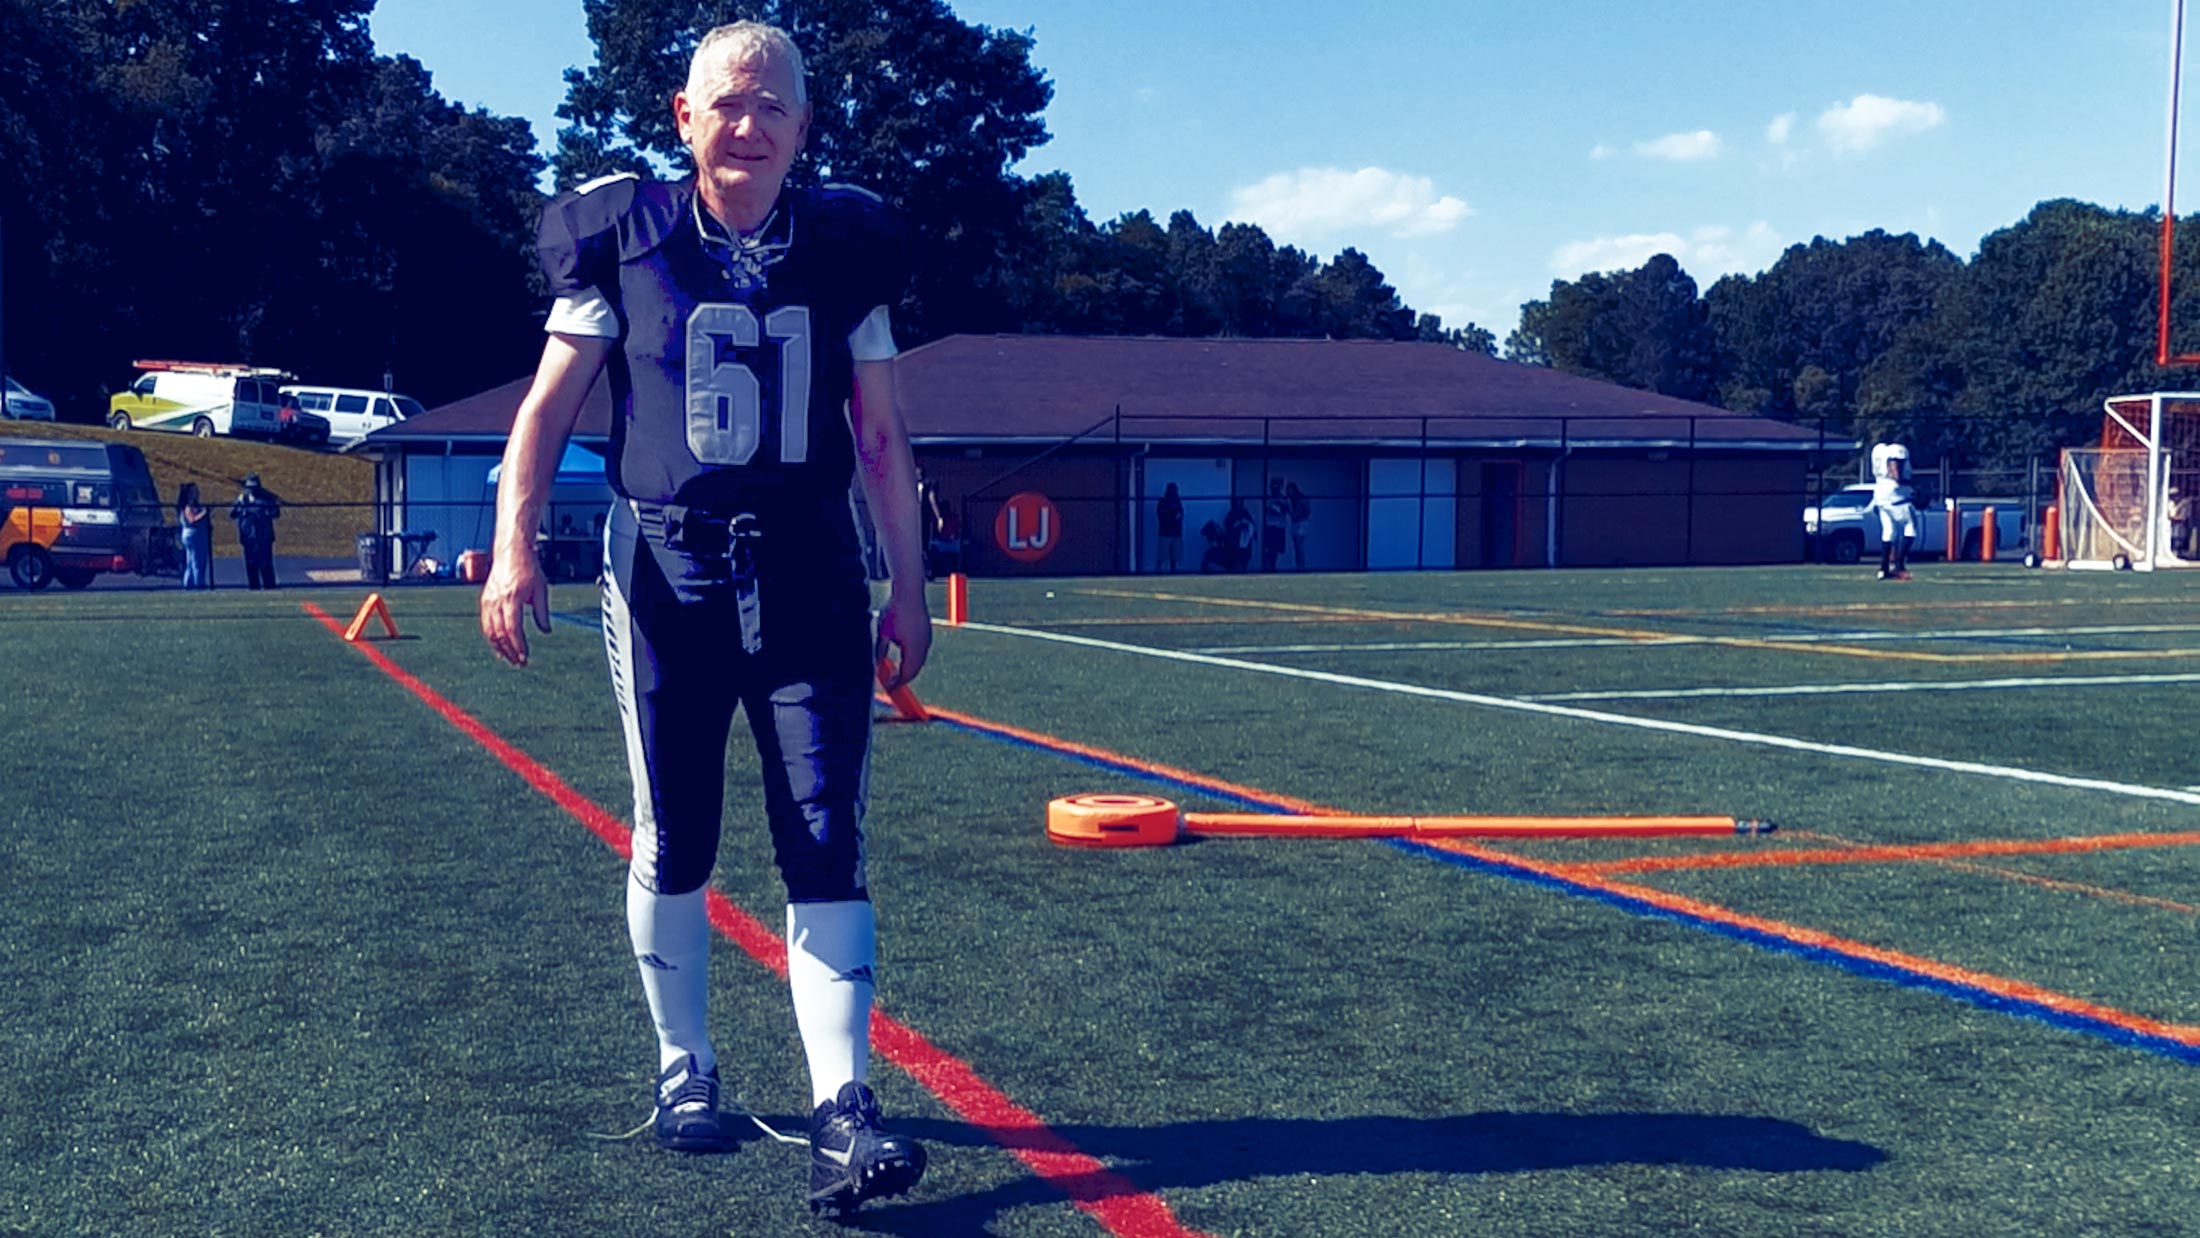 Professor Allen Lynch walking in a football uniform on the field